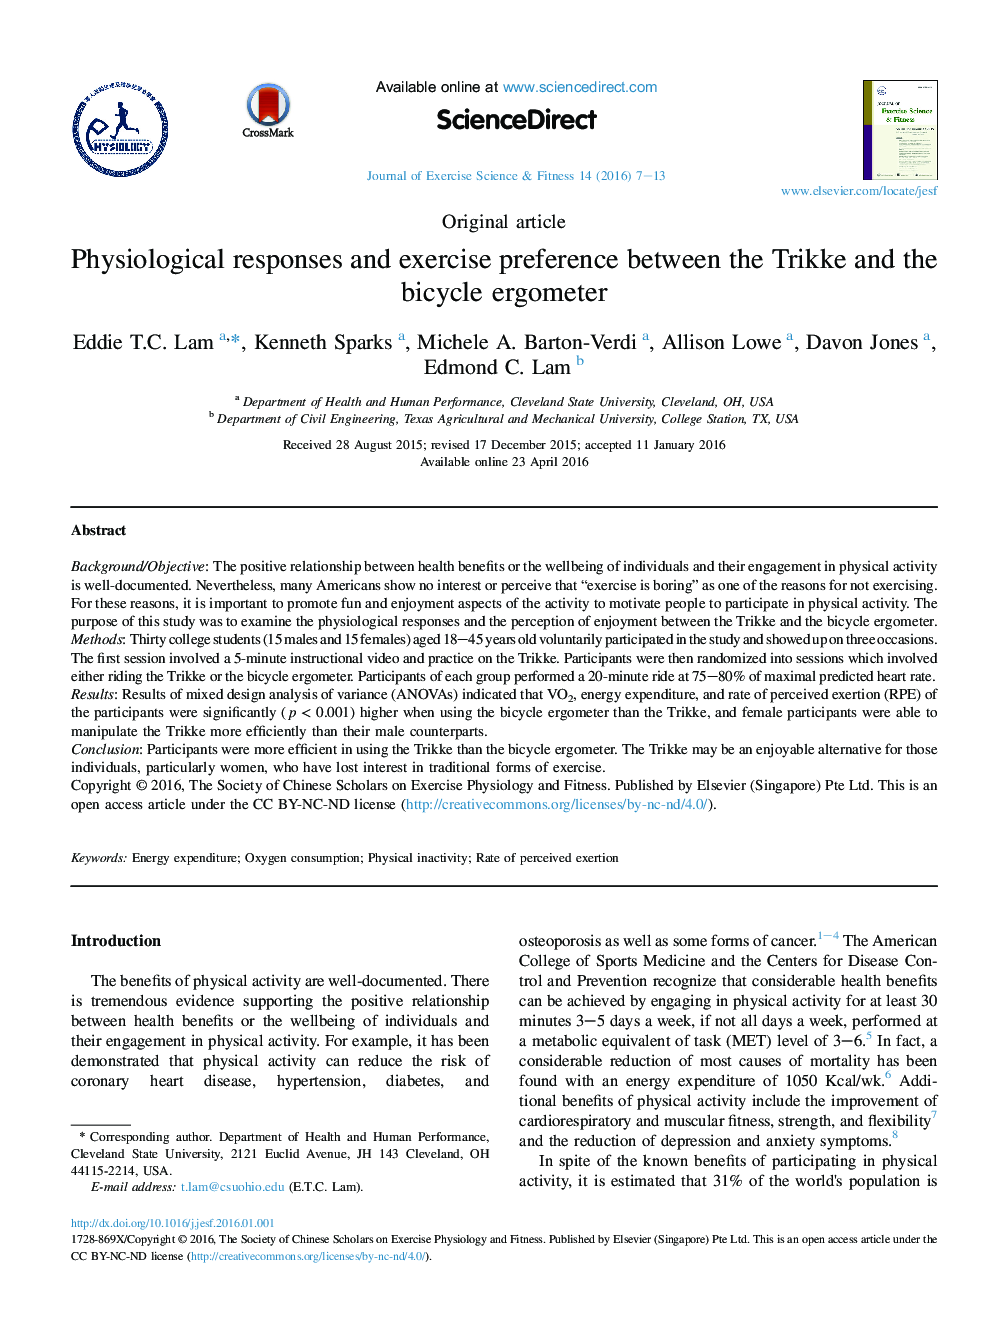 پاسخ های فیزیولوژیکی و ترجیح ورزش بین ارگومتر Trikke و دوچرخه 